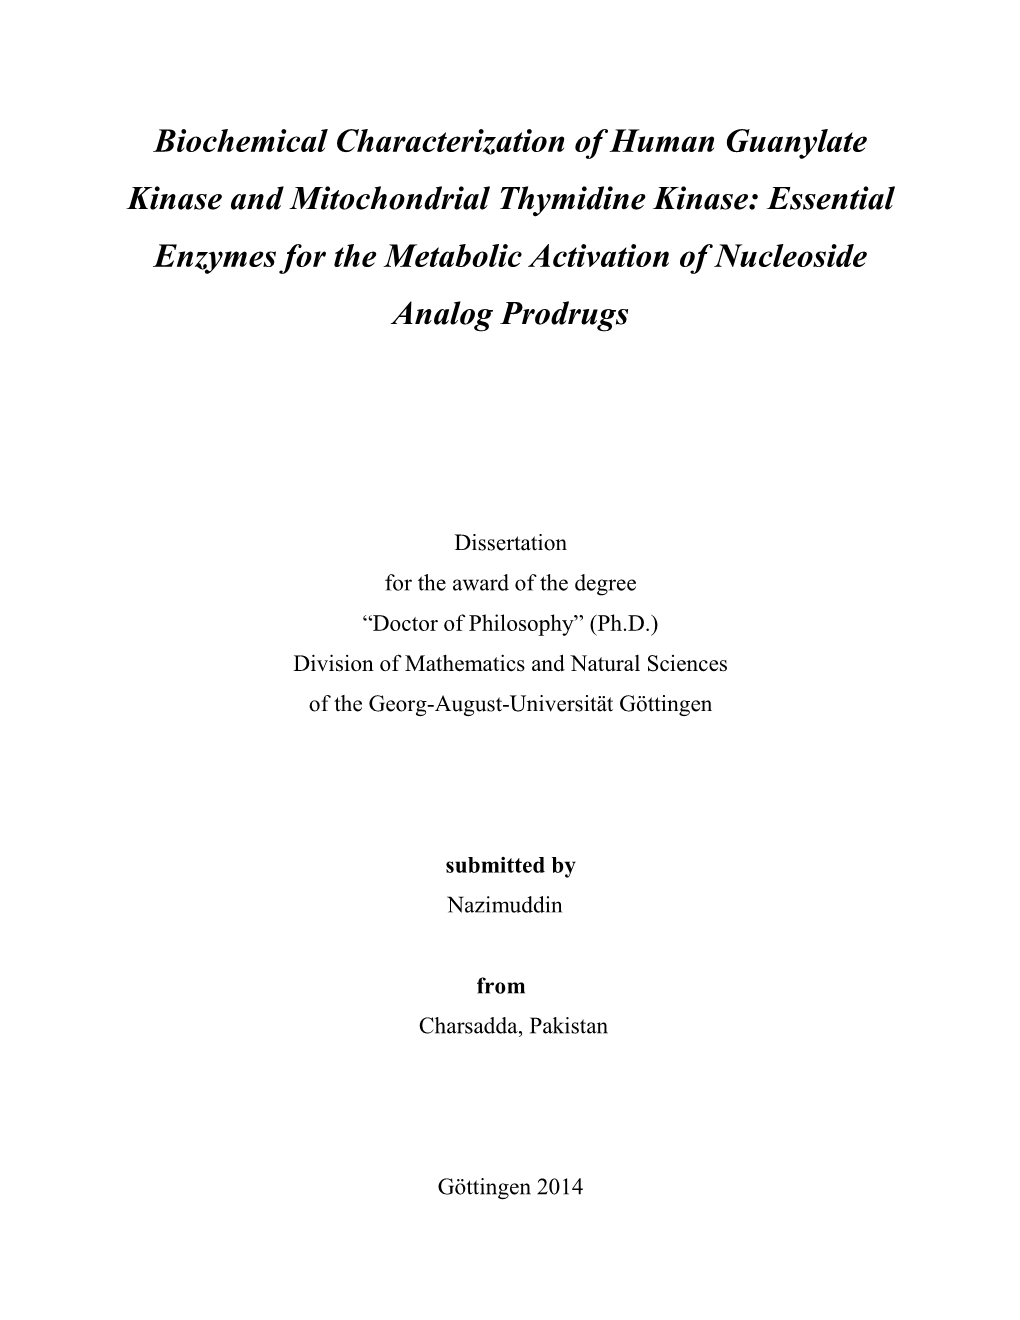 Biochemical Characterization of Human Guanylate Kinase And